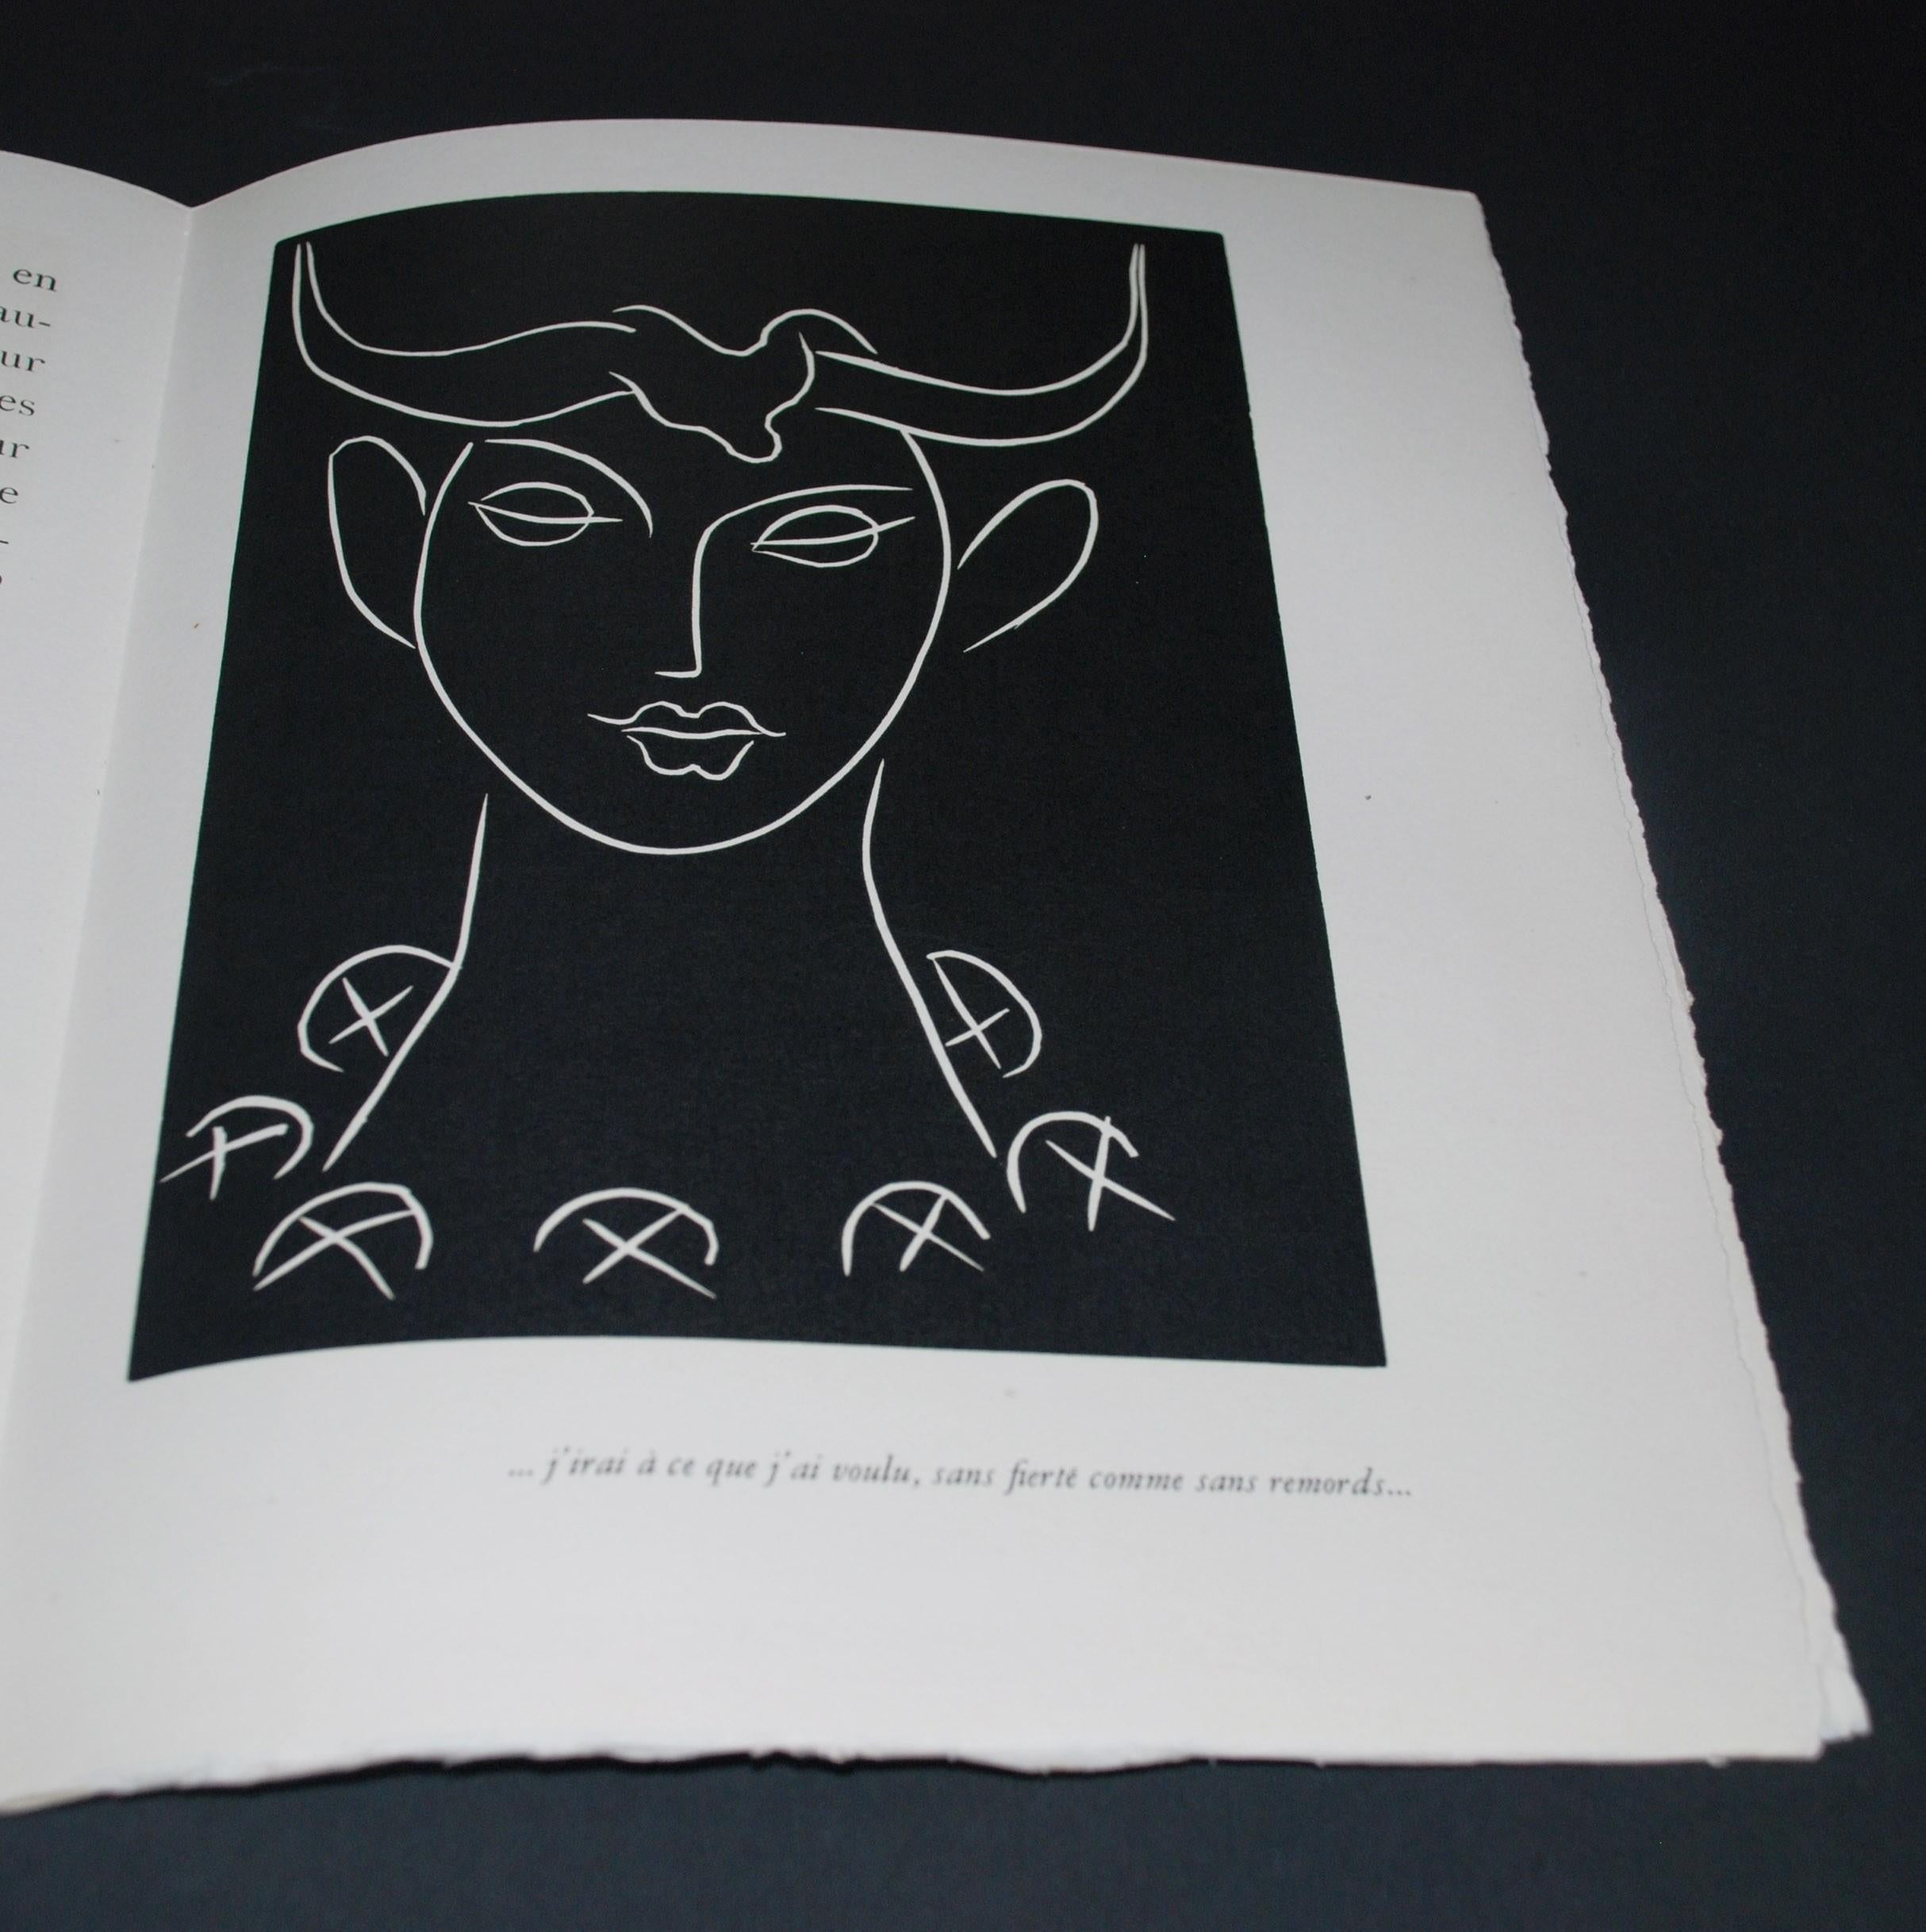 Pasiphae Plate 17: J'irai à ce que j'ai voulu, sans fierté comme sans remords - Print by Henri Matisse